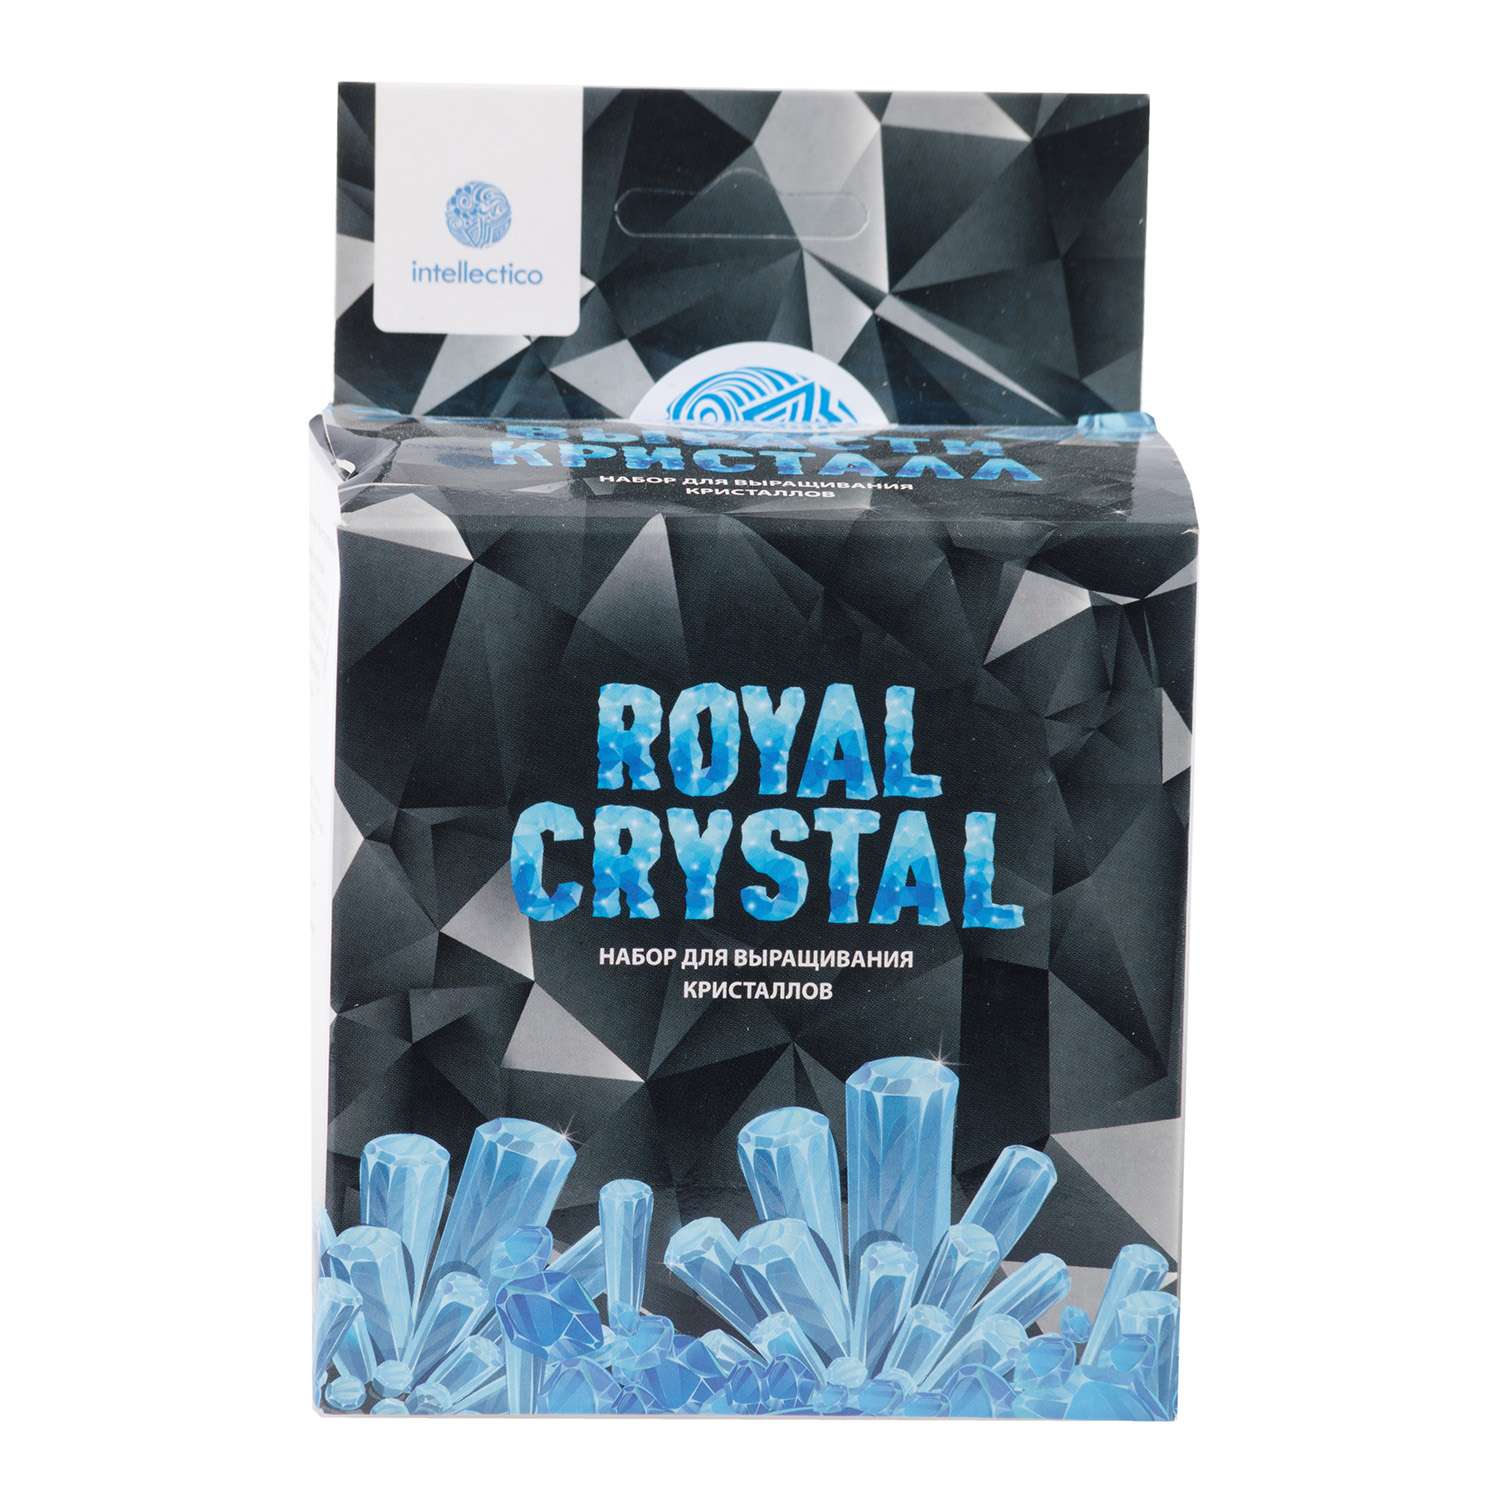 Набор для экспериментов intellectico Royal Grystal - фото 2